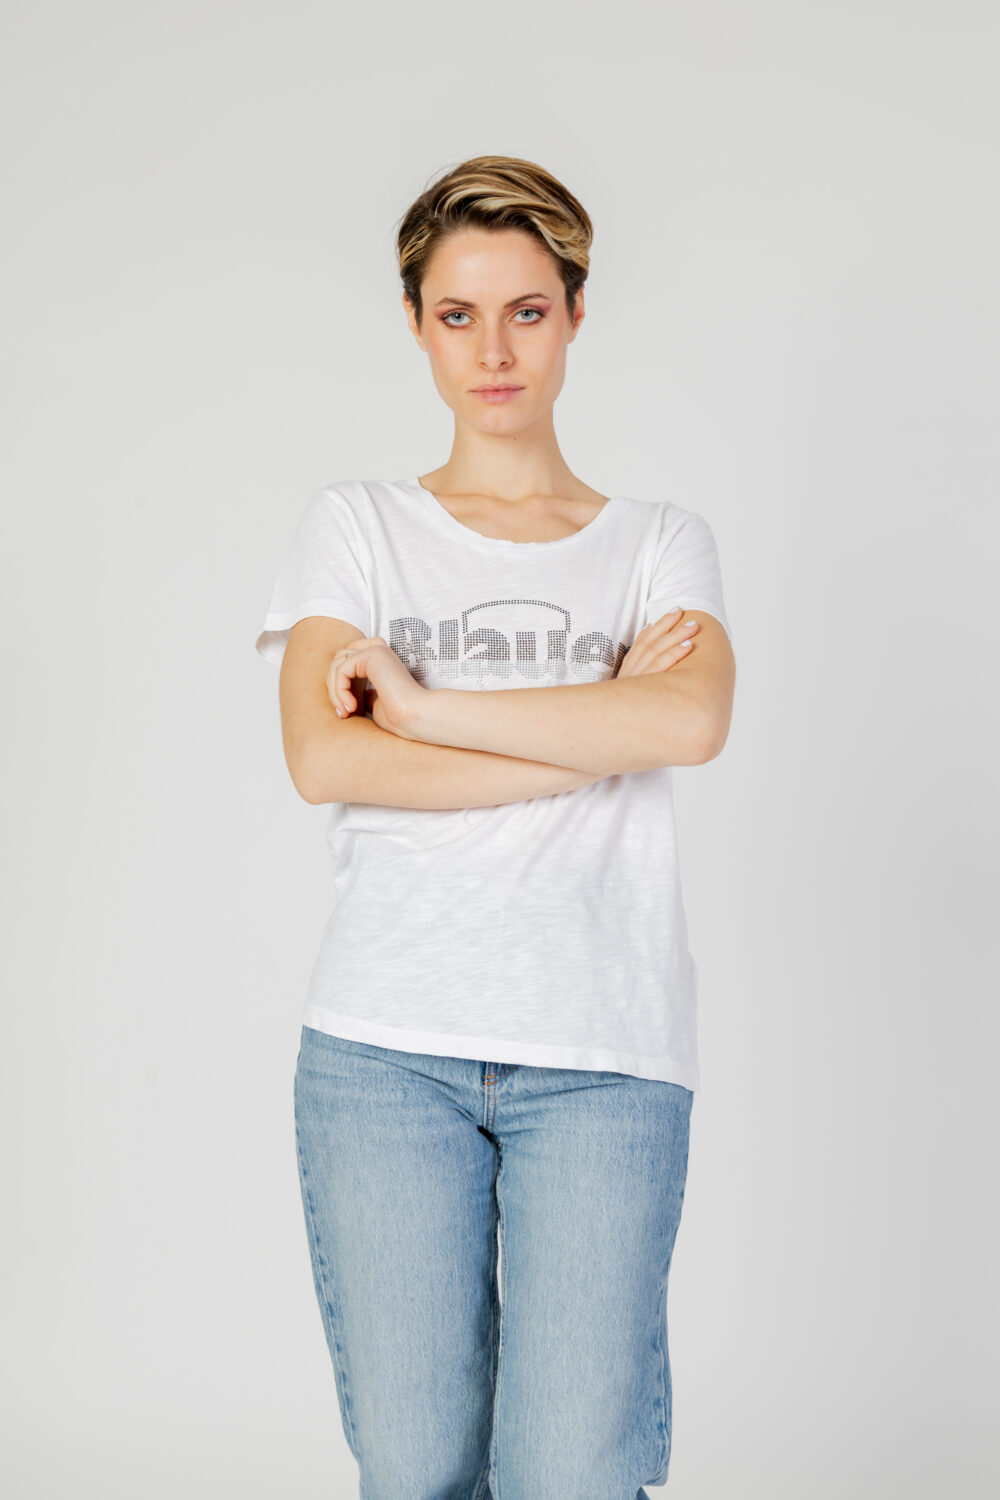 T-shirt Blauer.  Bianco - Foto 1